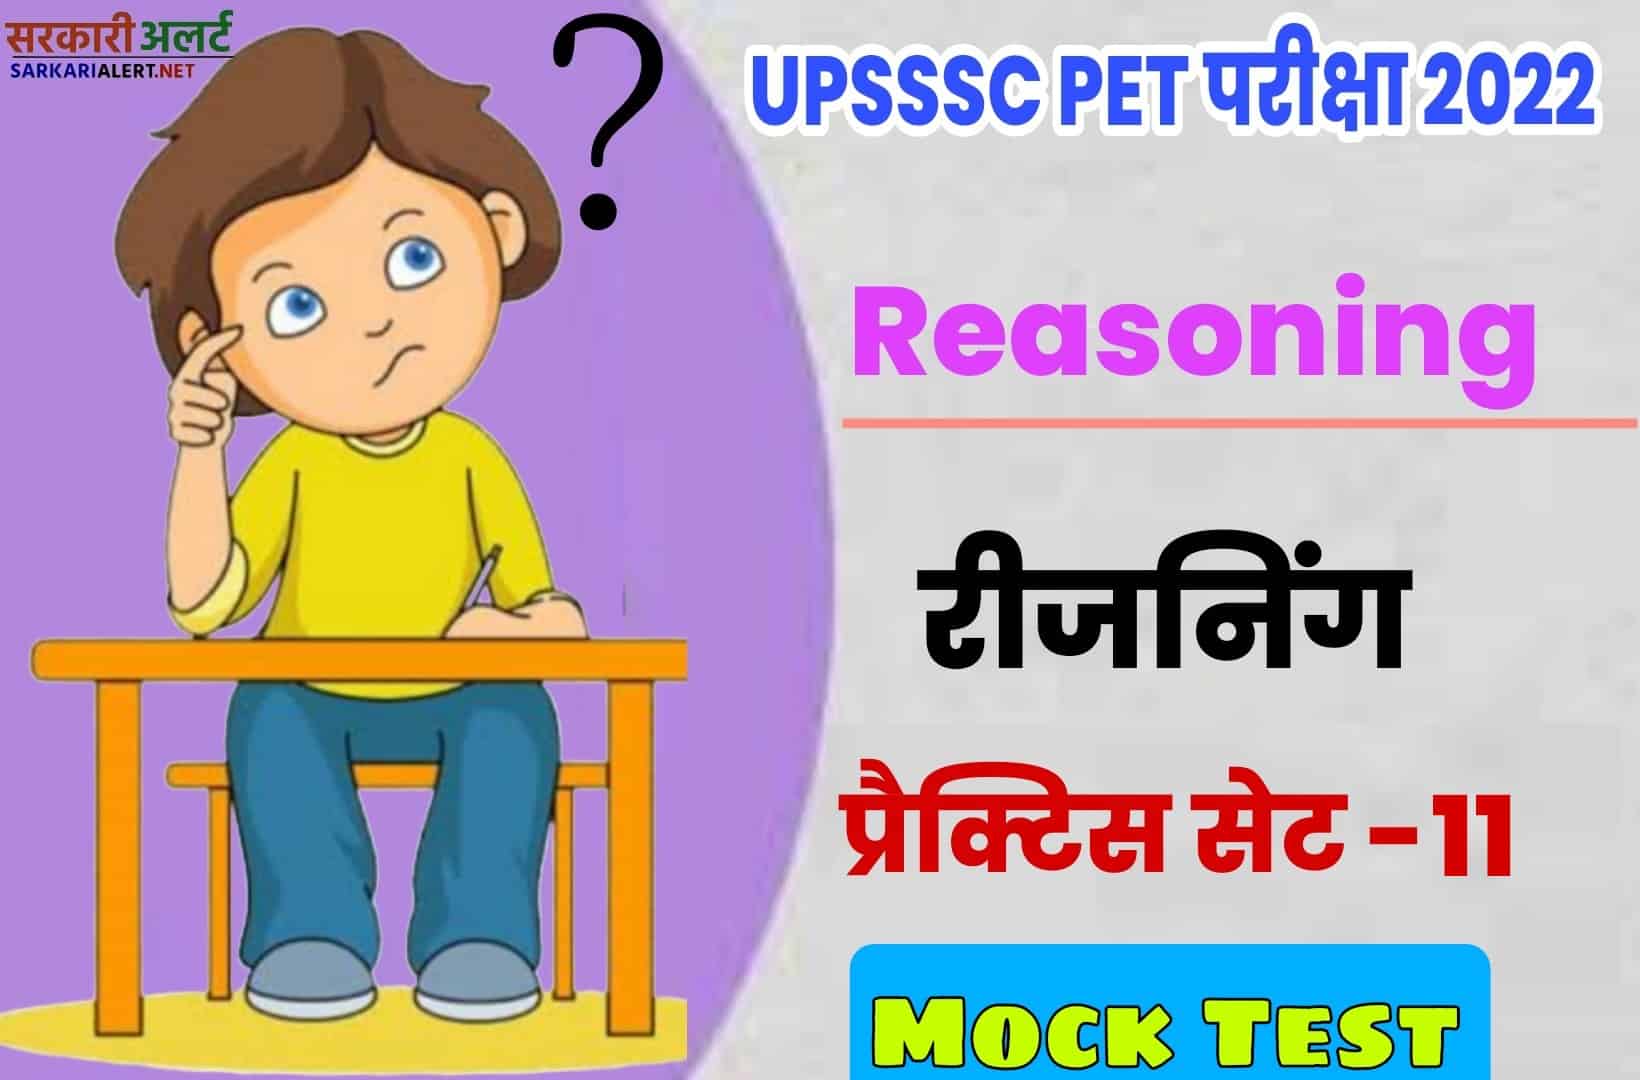 UPSSSC PET Reasoning Practice Set 11 | परीक्षा से पहले एक नजर जरूर पढ़ें मुख्य प्रश्नों संग्रह